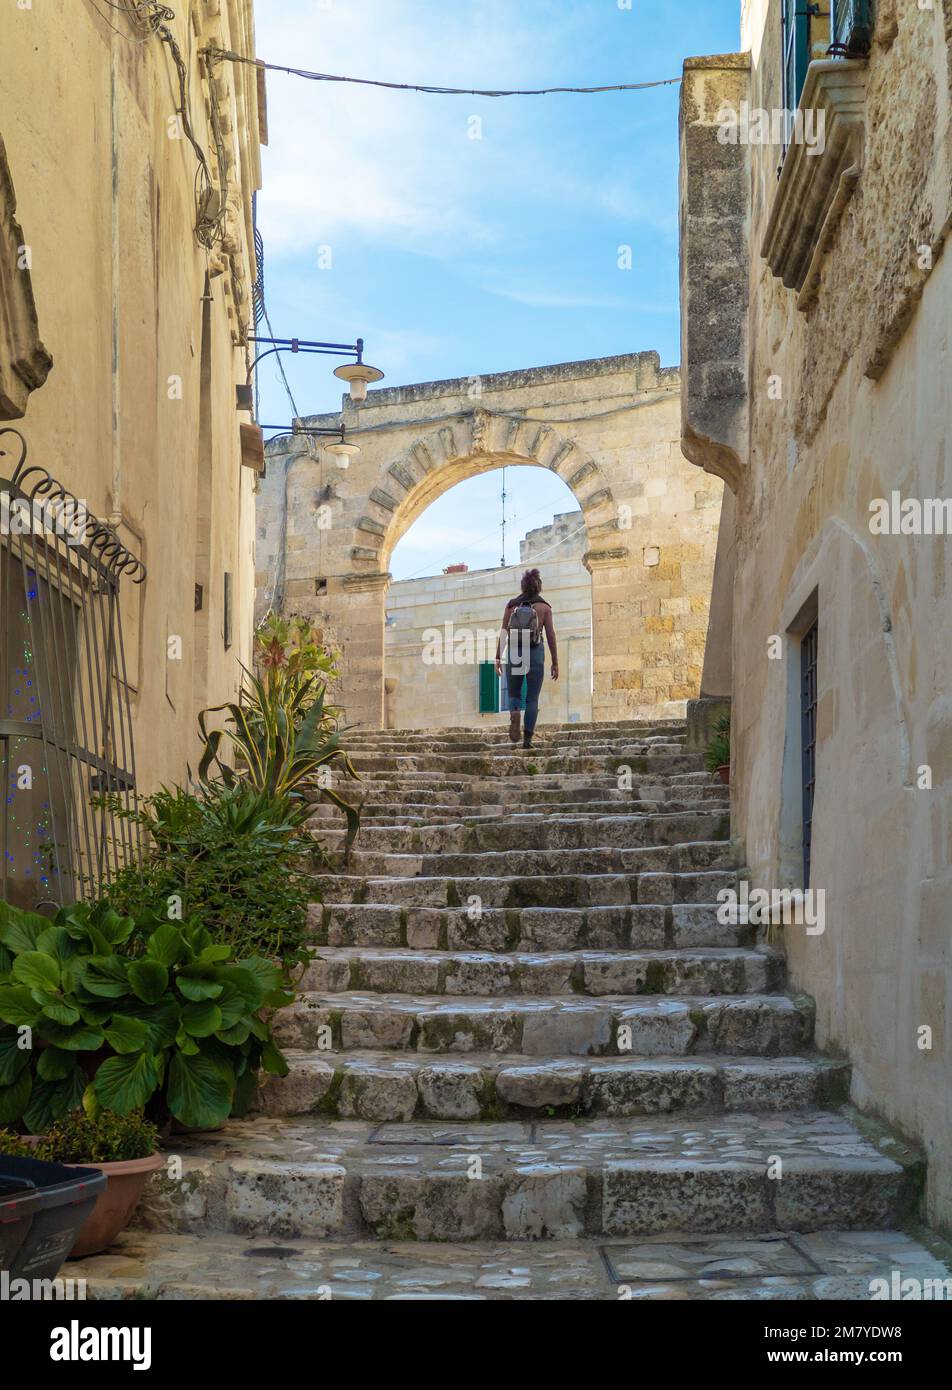 Matera (Basilicate) - le centre historique de la ville de pierre dans le sud de l'Italie, une attraction touristique pour la célèbre vieille ville de ssi, Murgia et le canyon de Gravina Banque D'Images